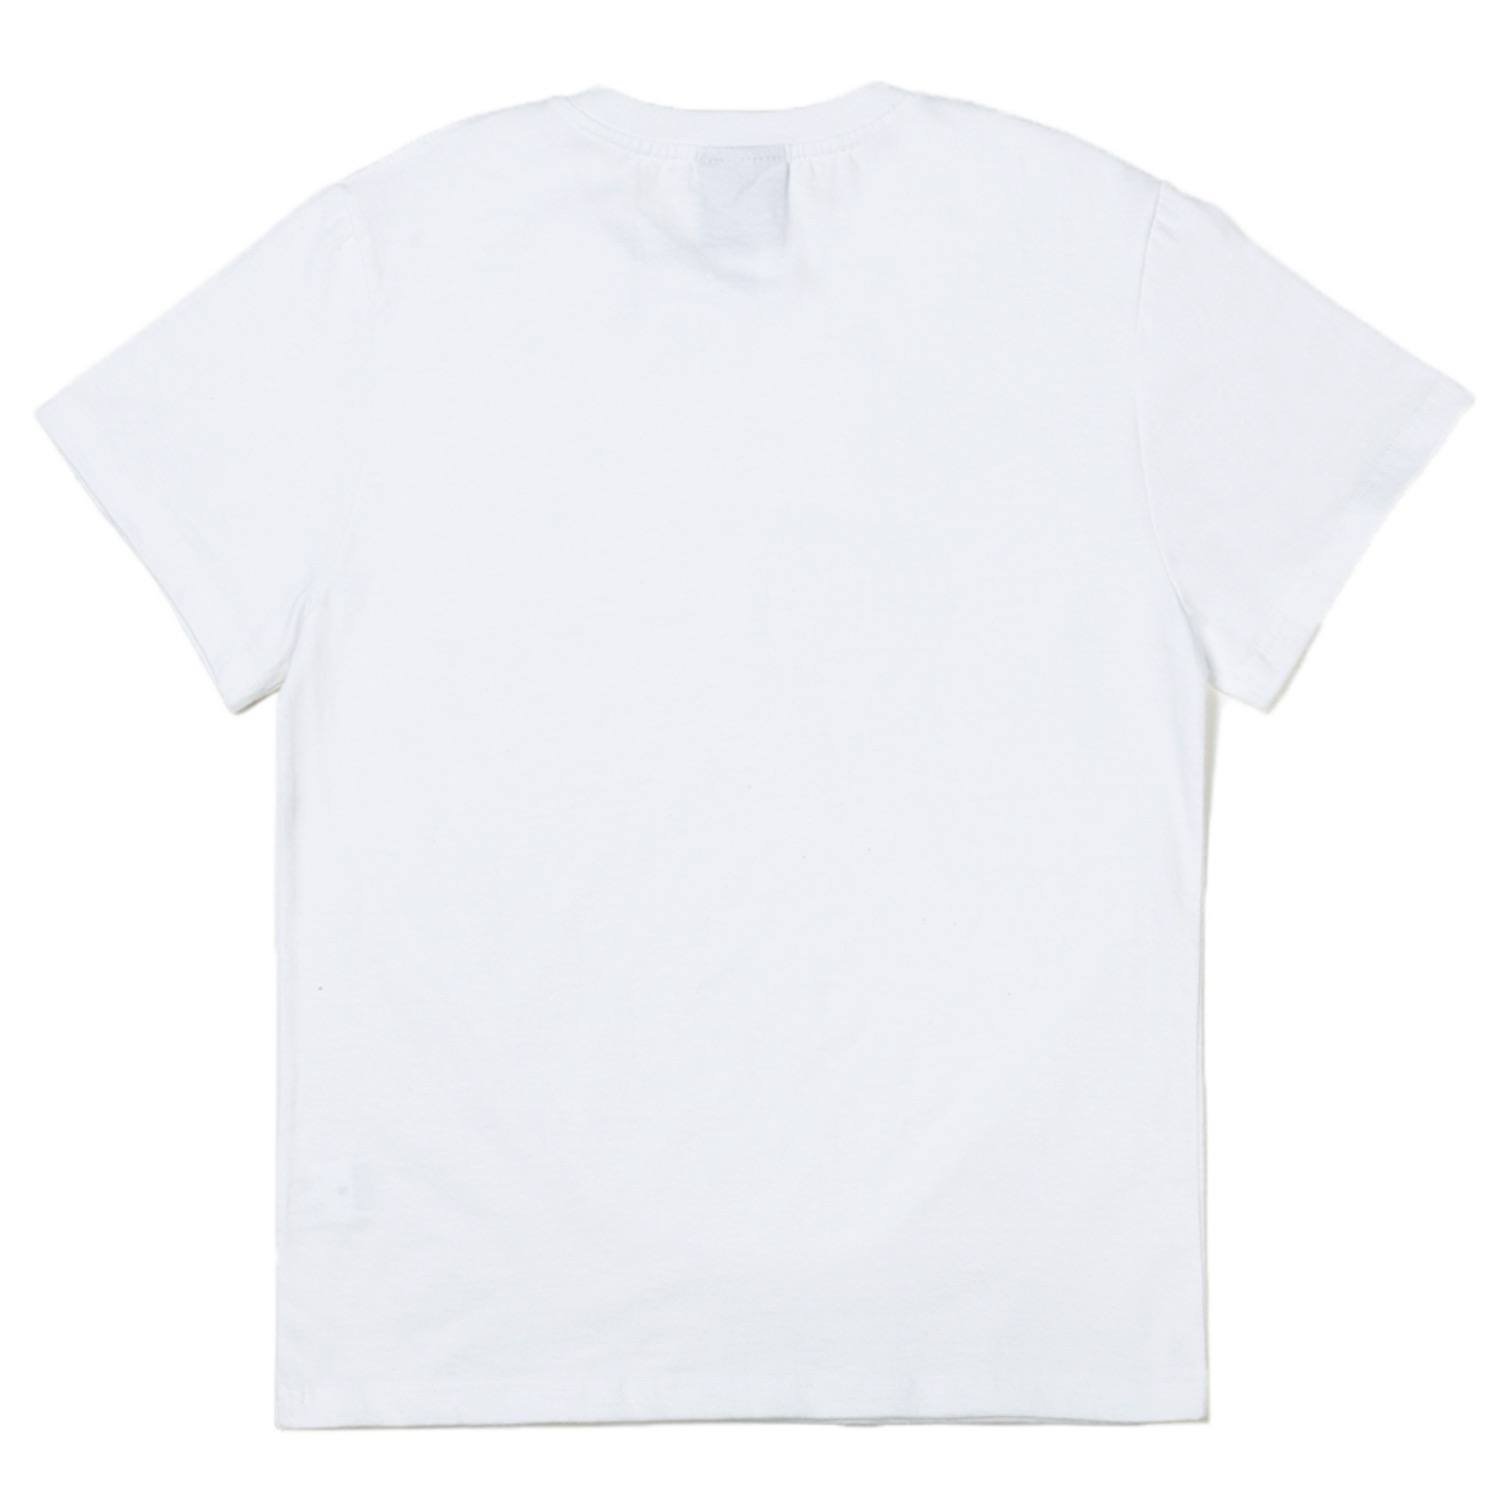 서울칼라플꽃 반팔티 화이트 Seoul Colorful Flower Short Sleeve T-shirts (White)